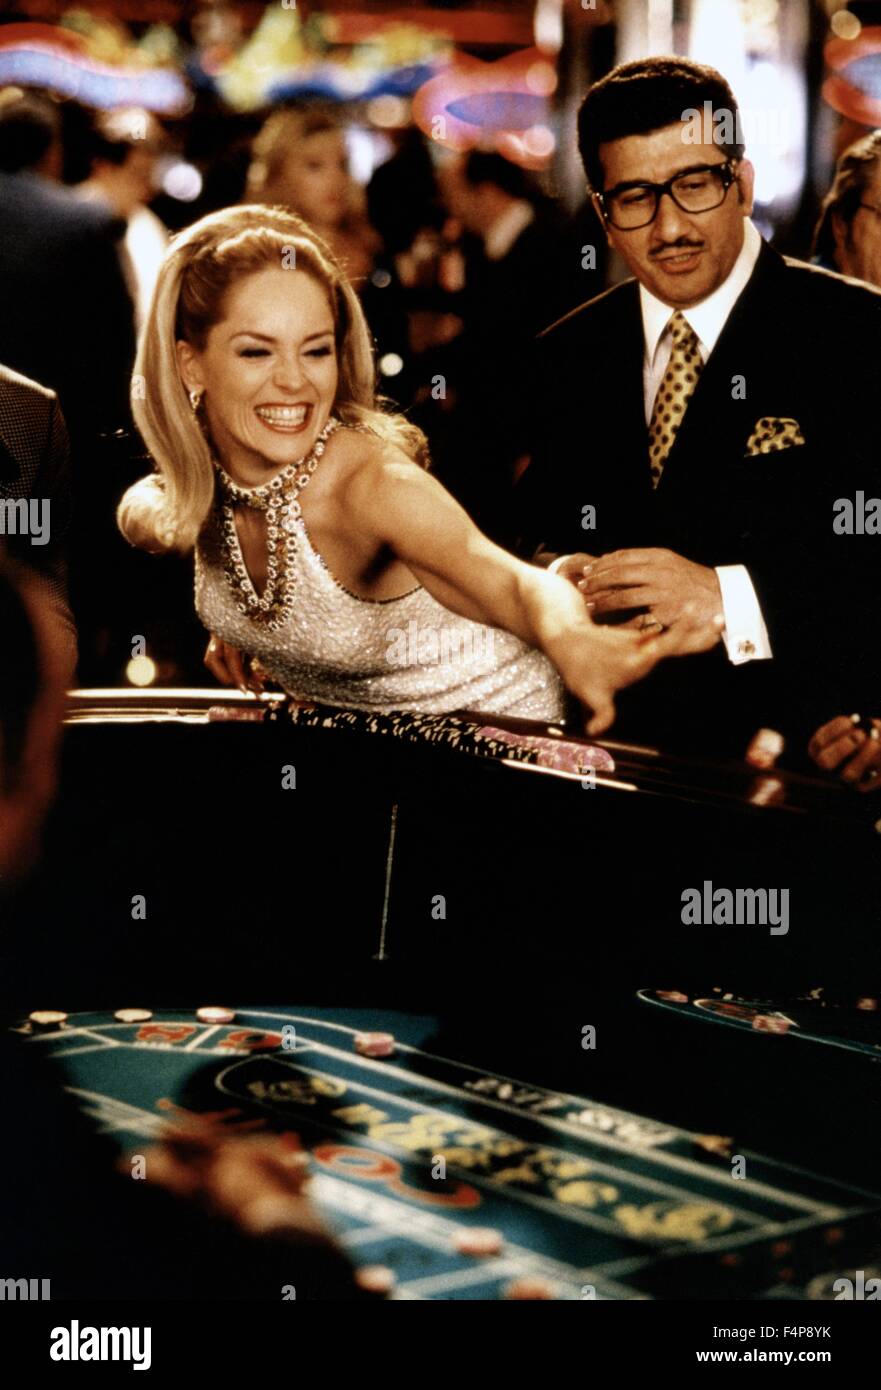 Sharon Stone Casino Stockfotos Und Bilder Kaufen Alamy